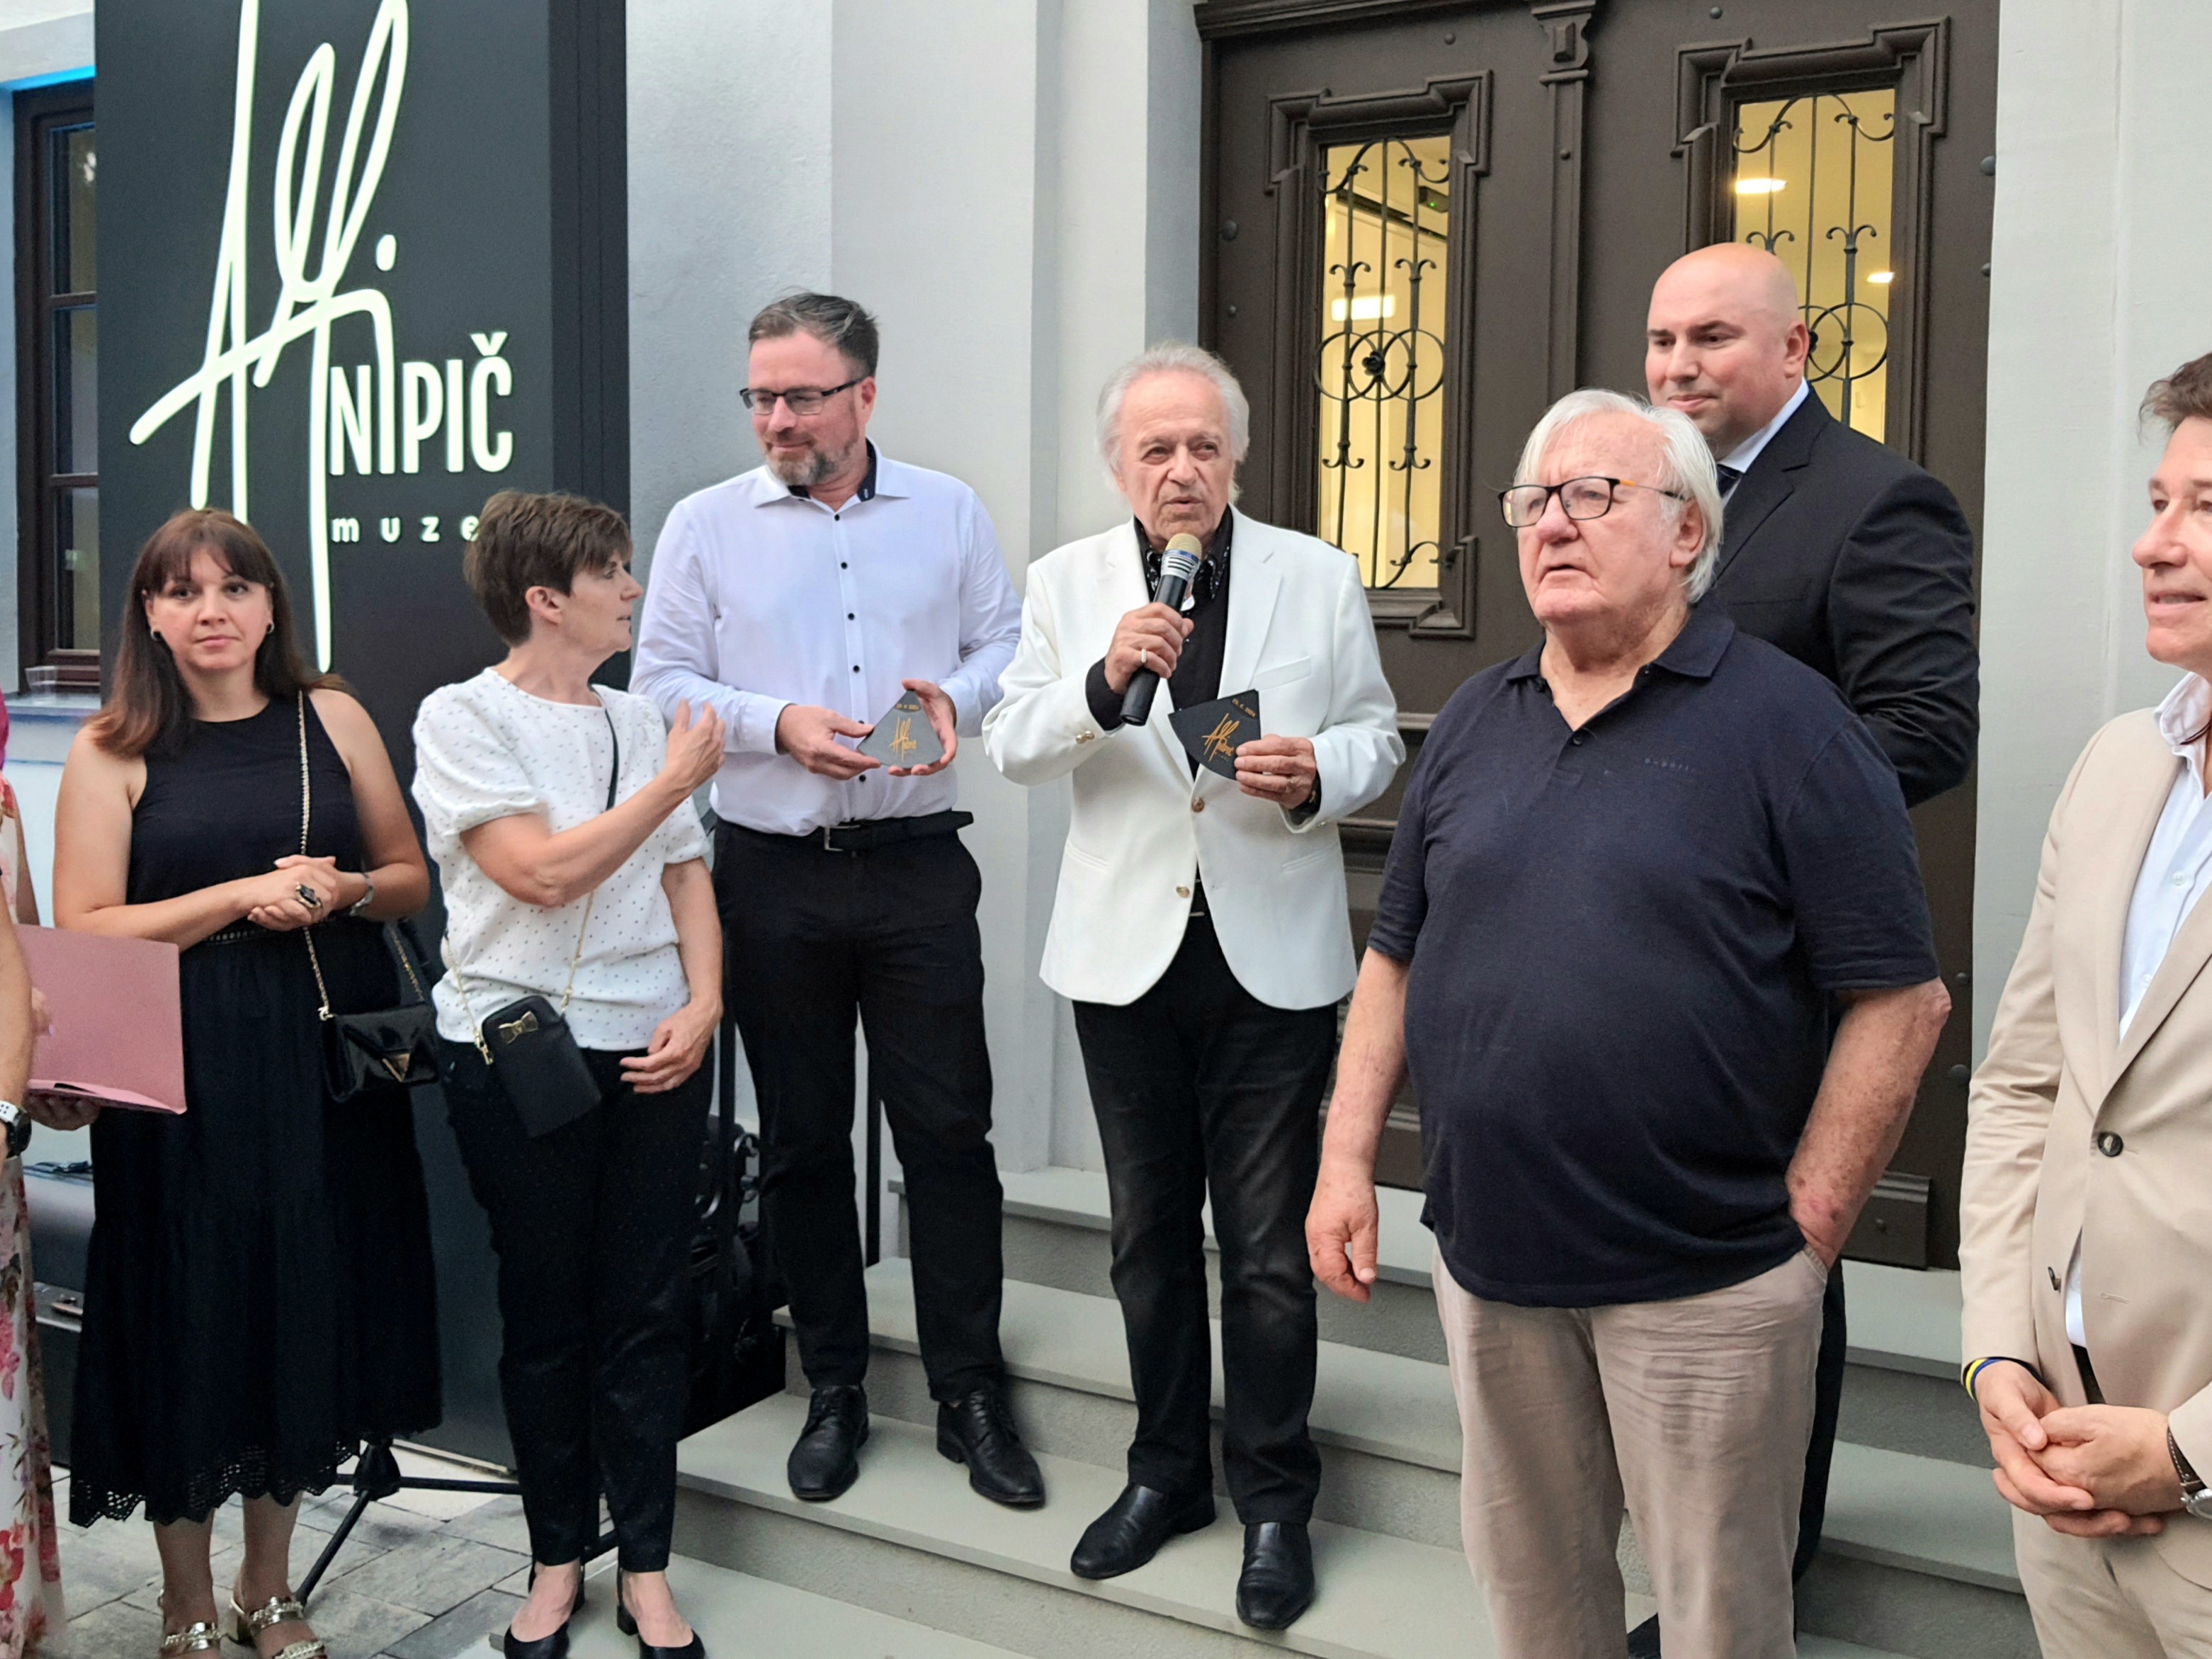 Slovenija dobila nov glasbeni muzej: Štajerska hiša glasbe z muzejem Alfija Nipiča v Jarenini